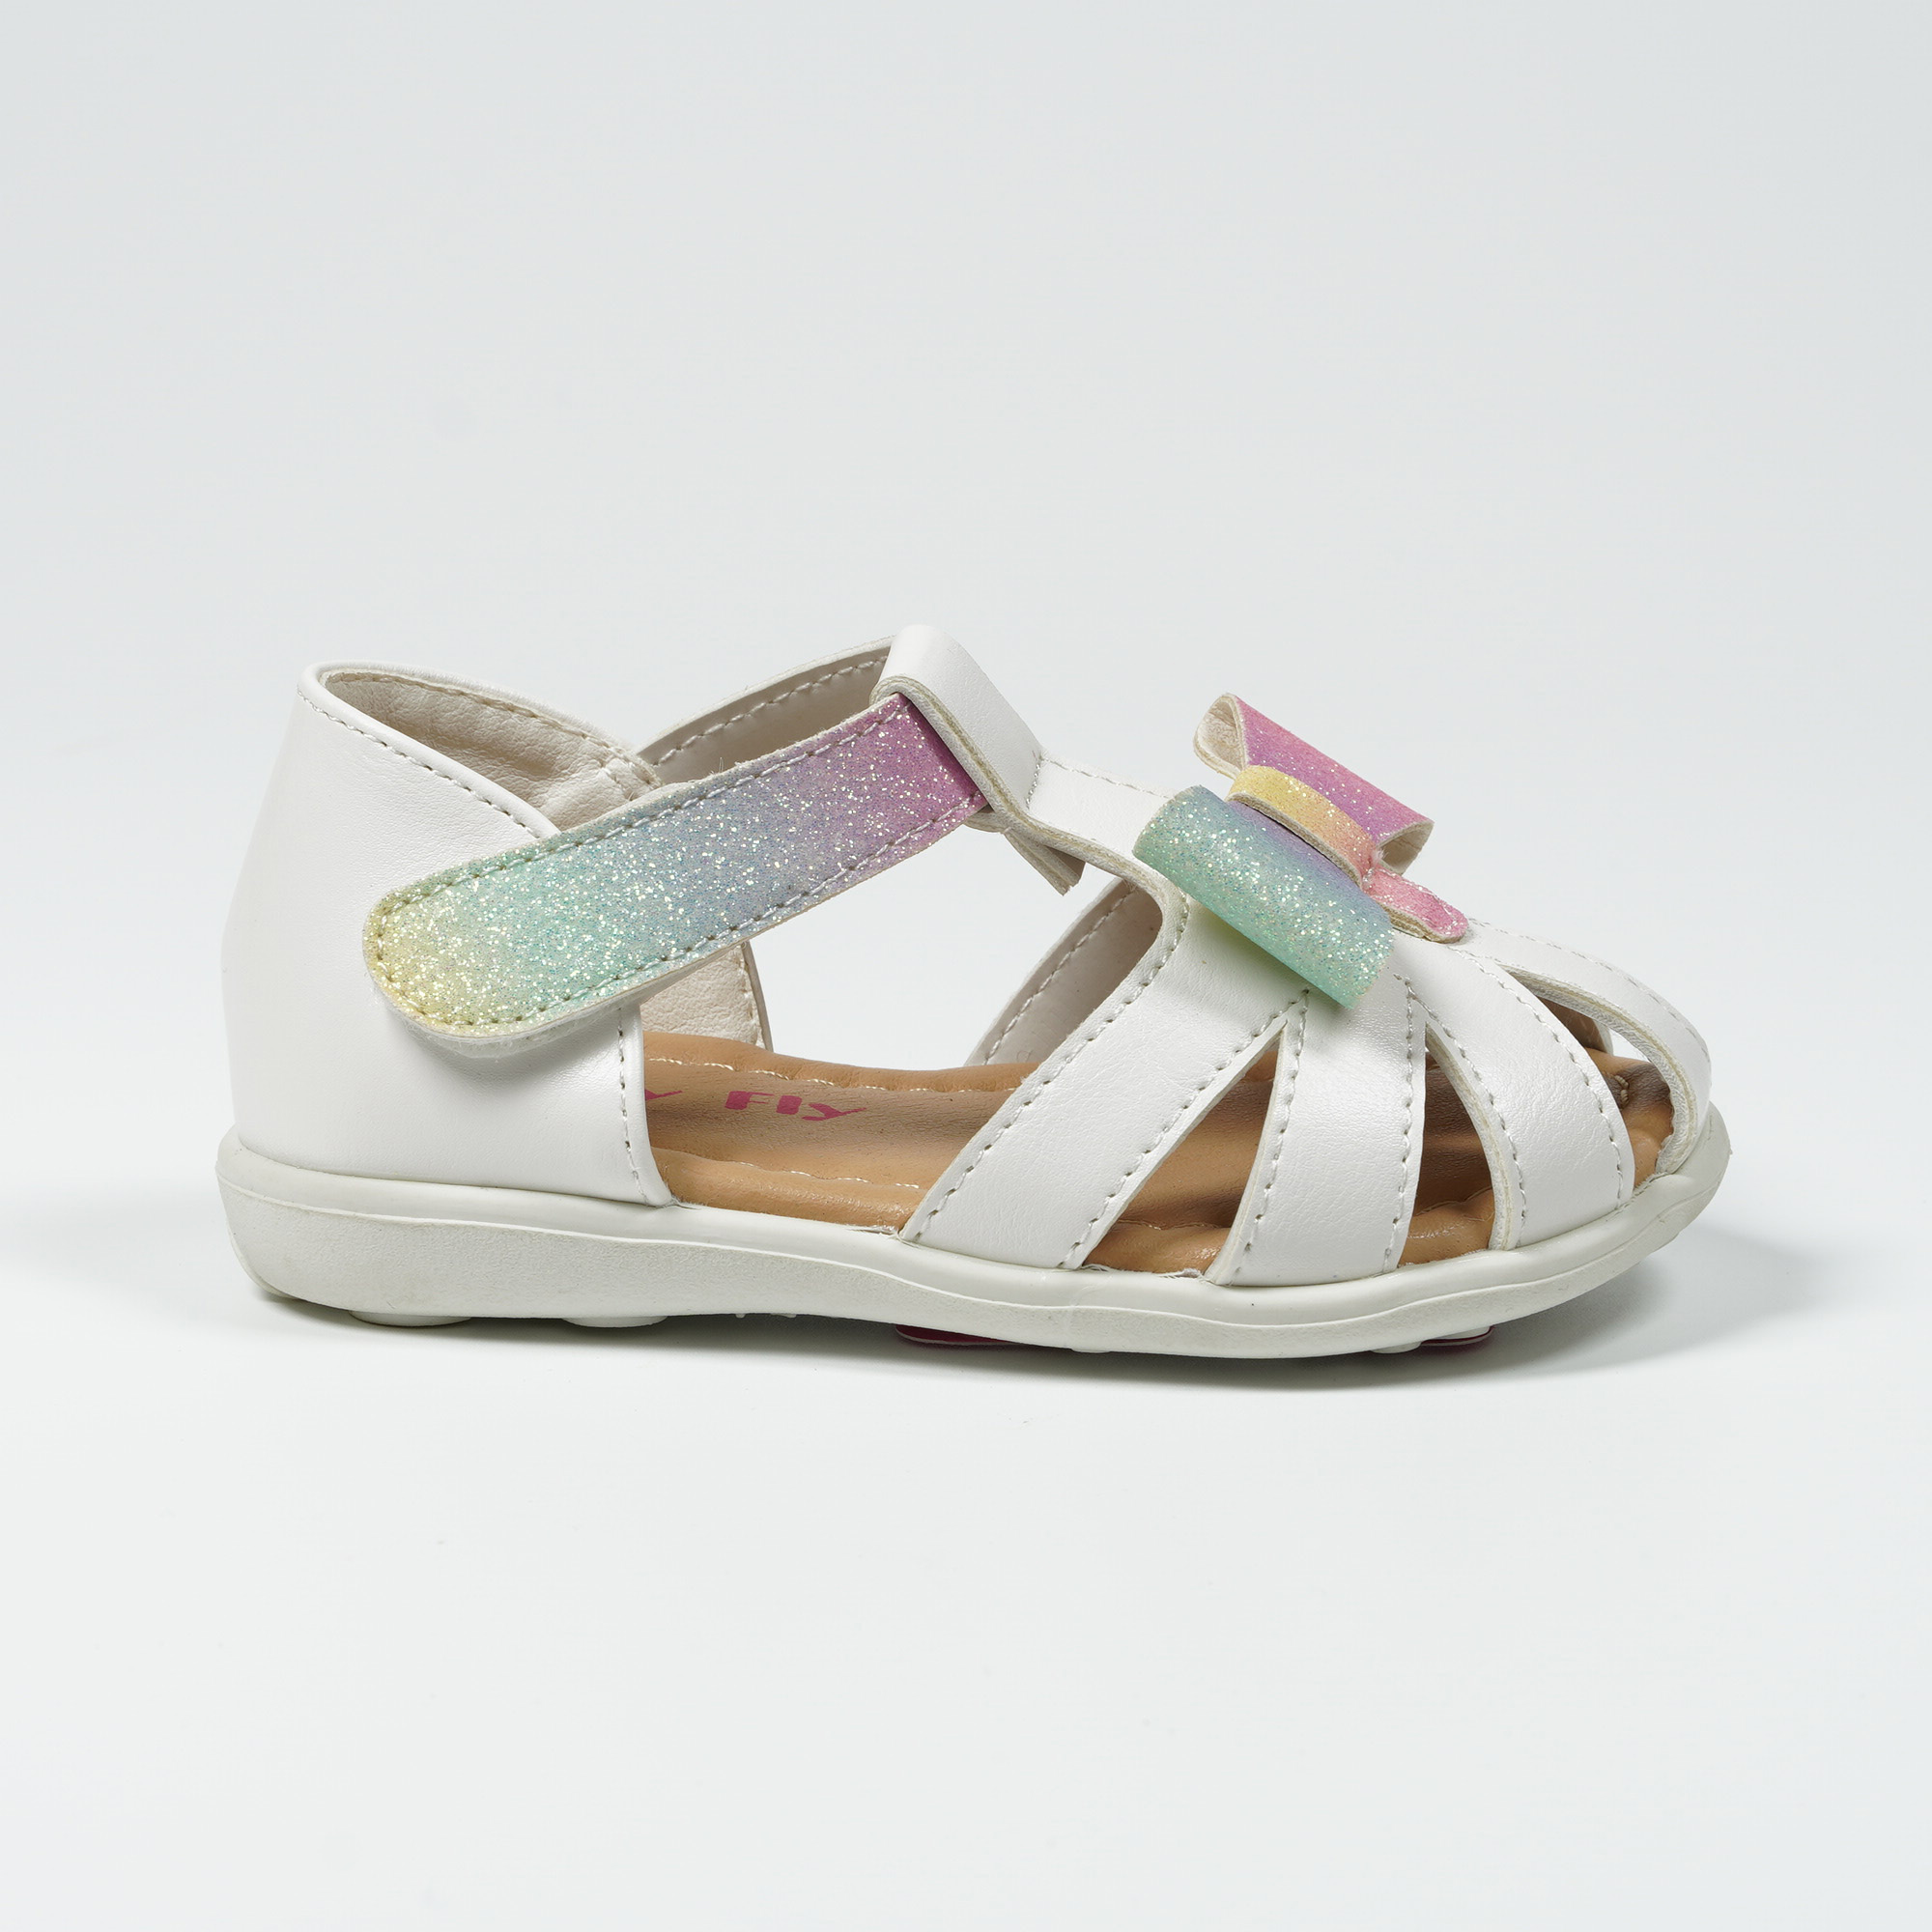 Girls Outdoor Glitter Bow Sandals Comfortable Summer Beach Shoes